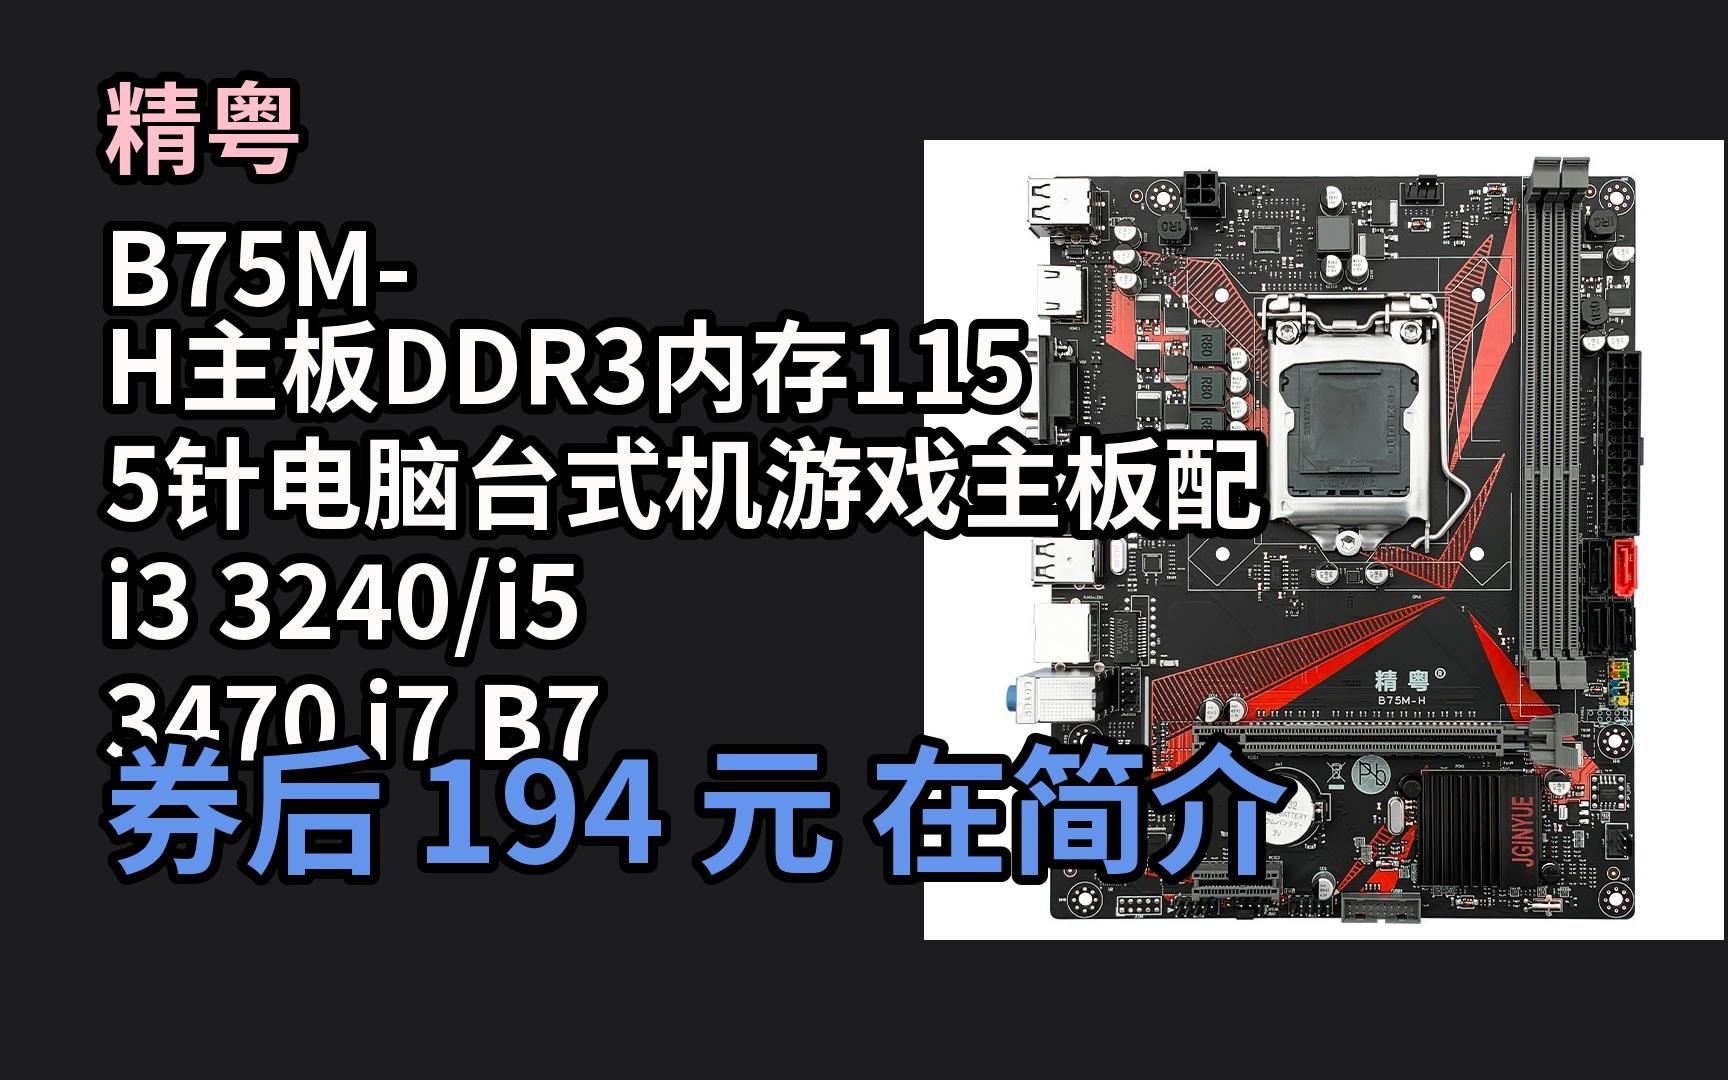 深度解析 DDR3 代内存的独特魅力与面临的窘境  第4张